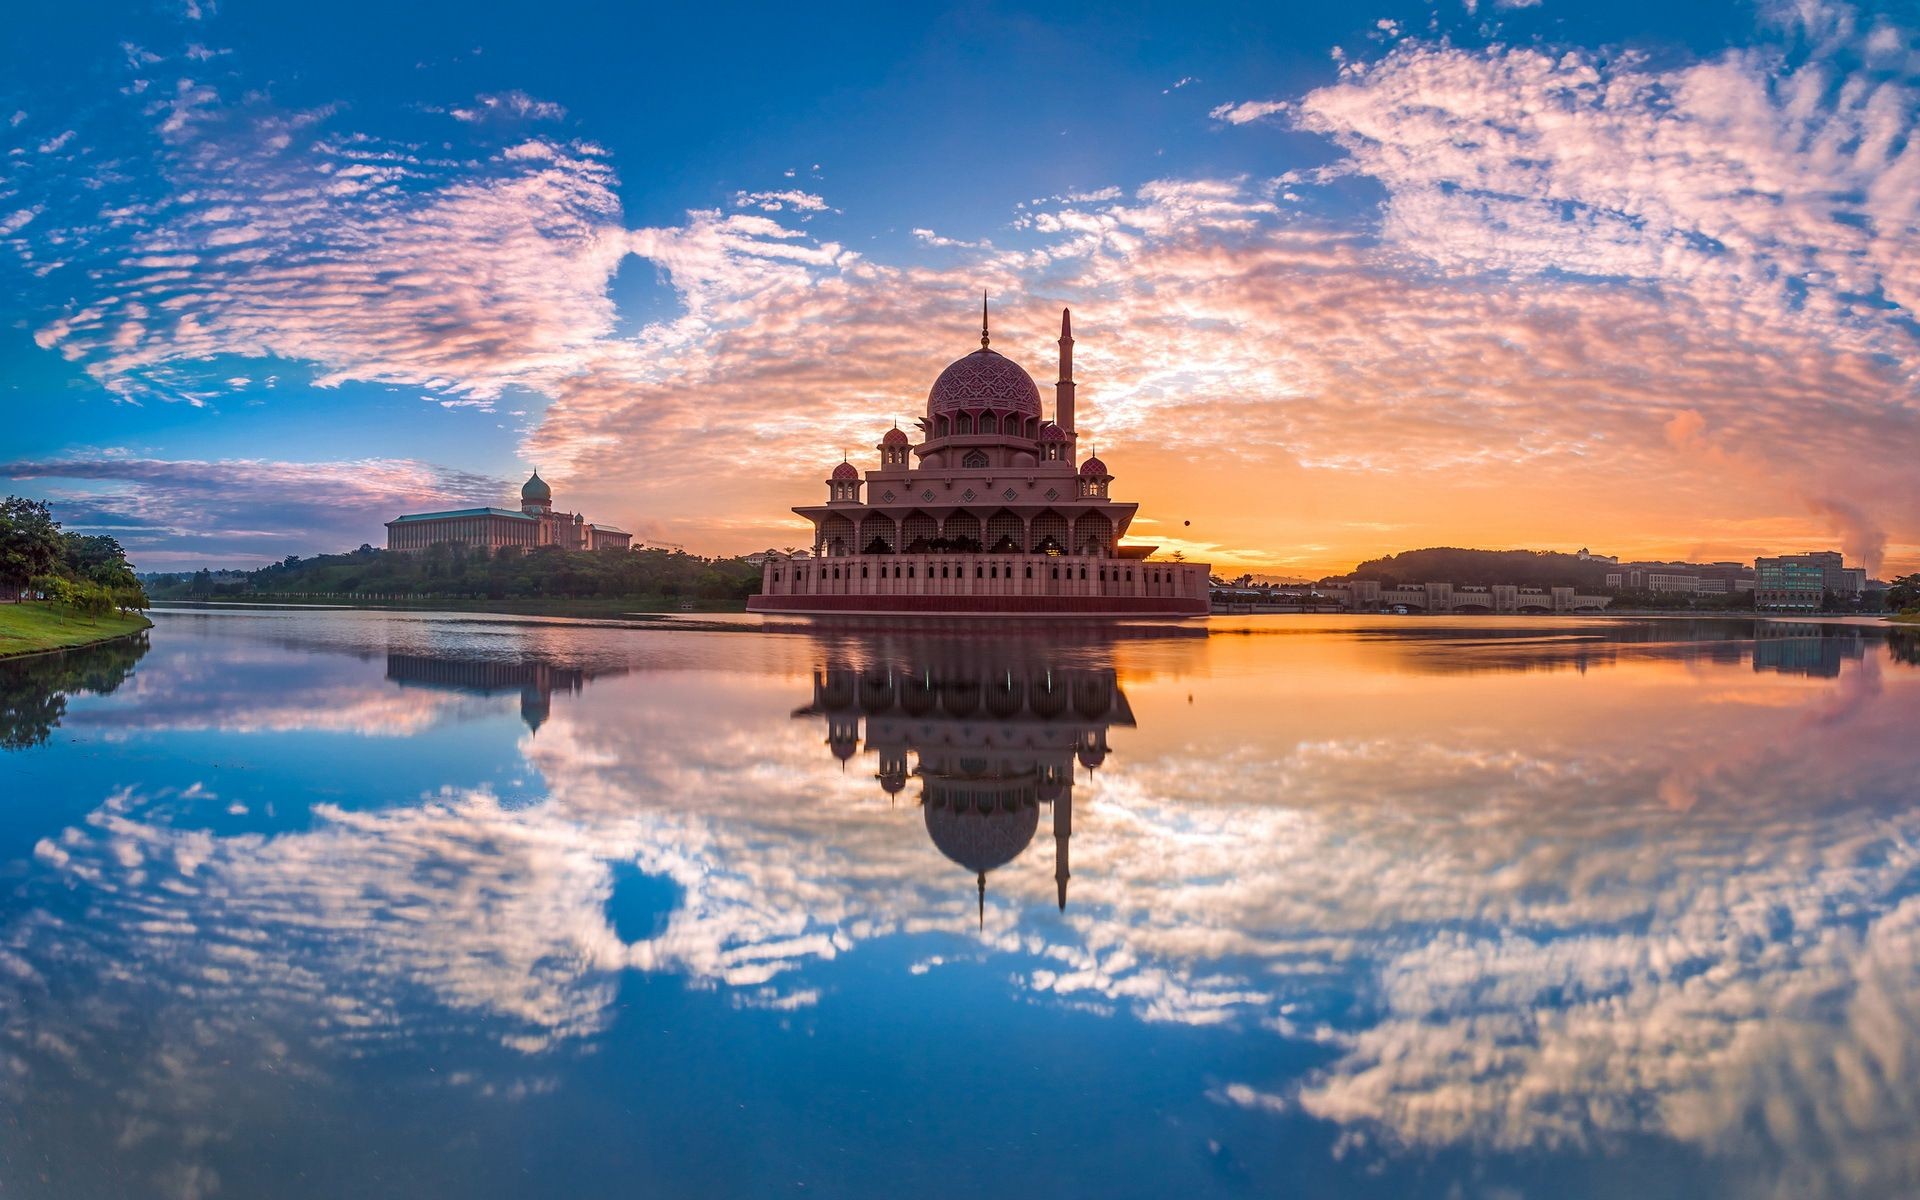 صور مدينة بوتراجايا كوالالمبور ماليزيا, افضل مدينة سياحية في ماليزيا, صور ماليزيا